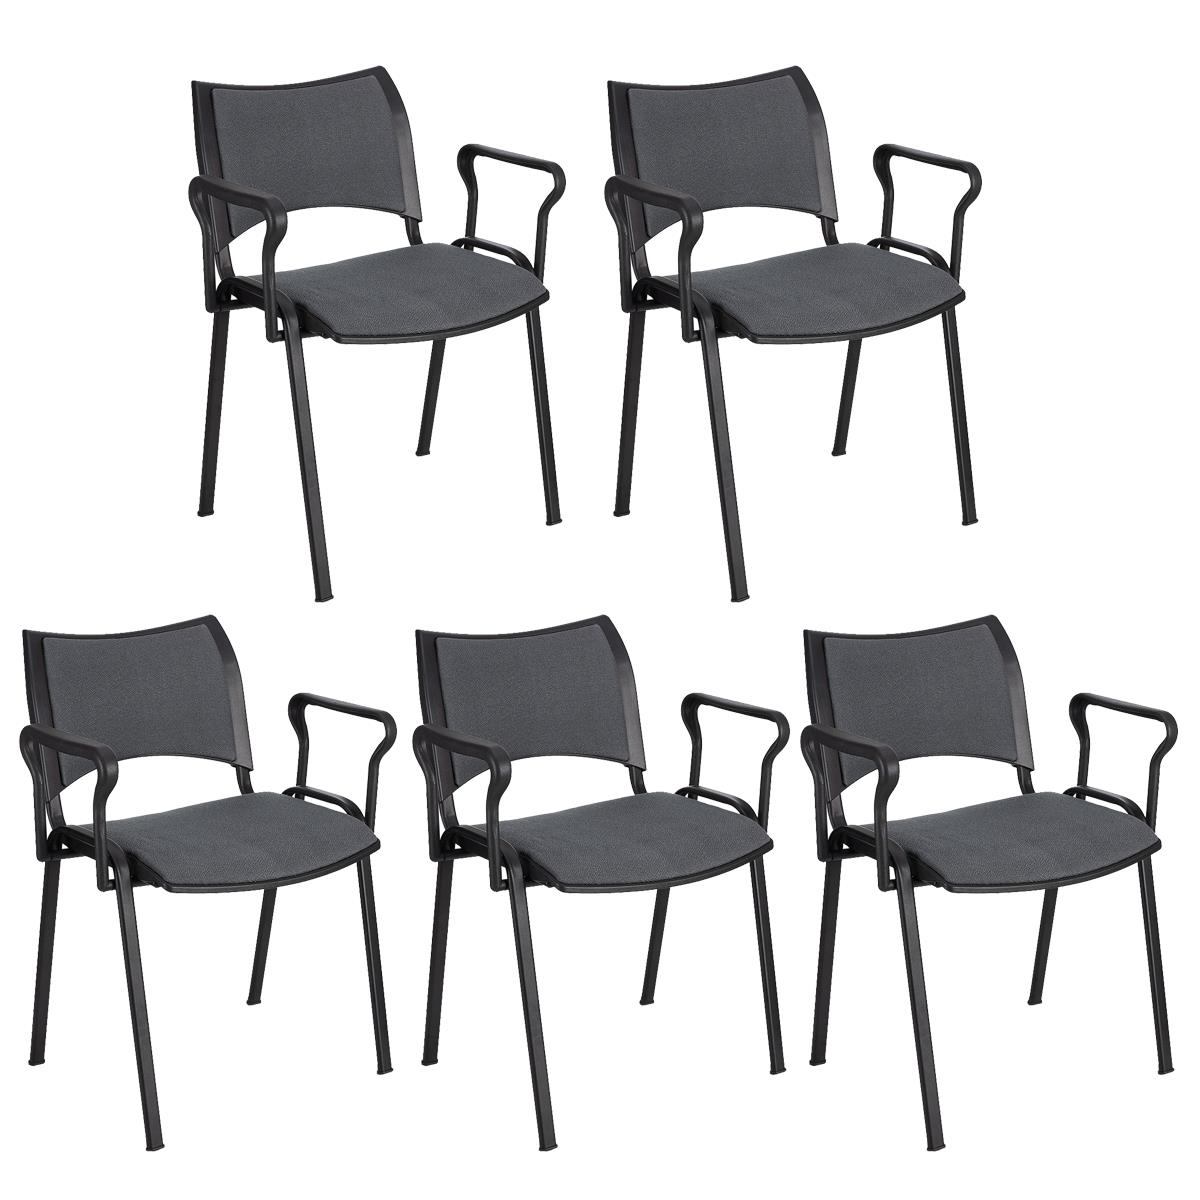 Lote 5 Cadeiras de Visita ROMEL COM BRAÇOS, Empilhável, Pernas Pretas, Em Pano, Cinzento